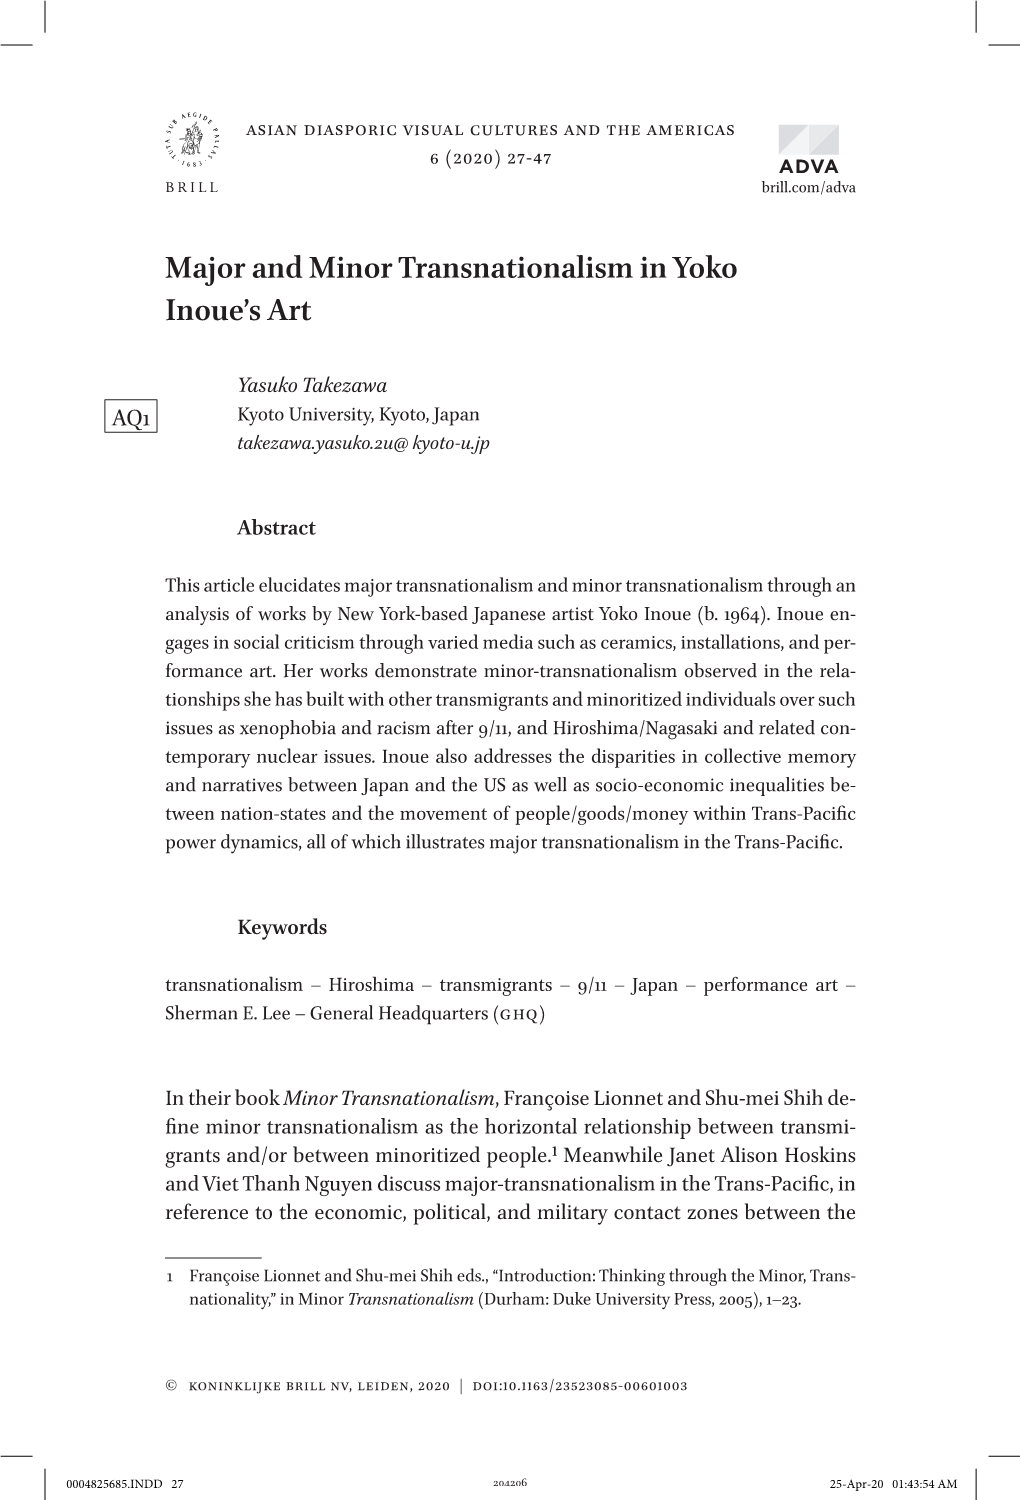 Major and Minor Transnationalism in Yoko Inoue's